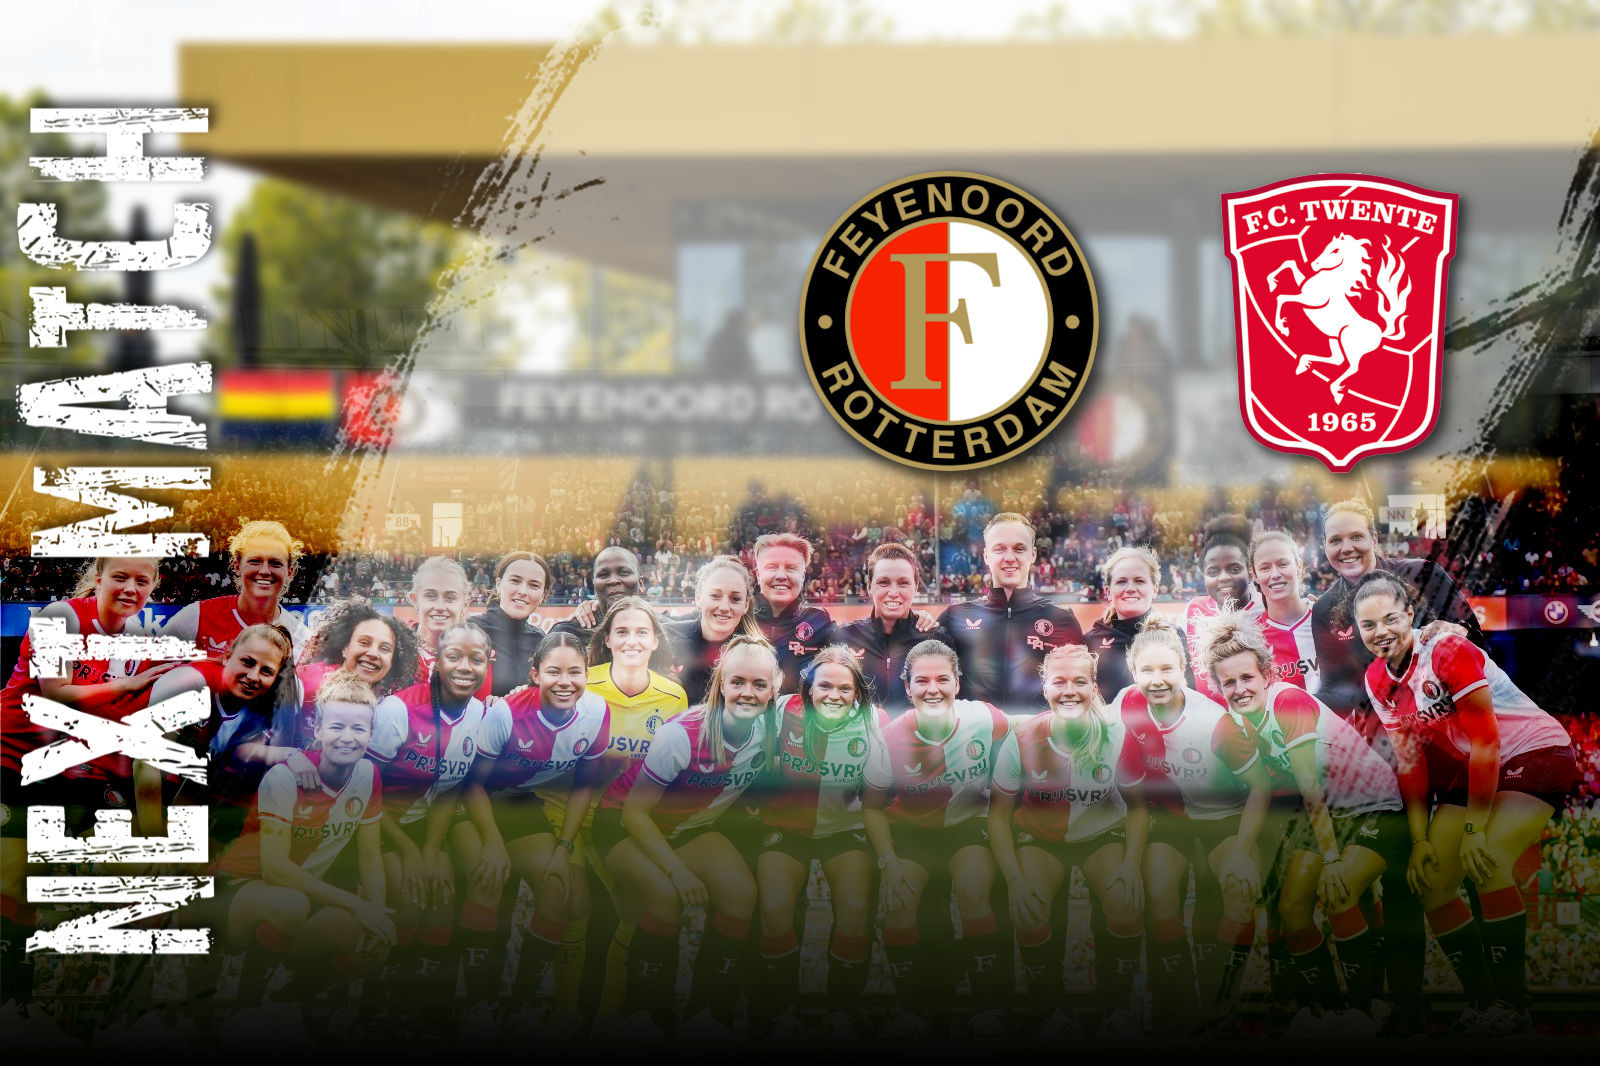 NEXT MATCH • Feyenoord V1 in kwartfinale Beker tegen FC Twente